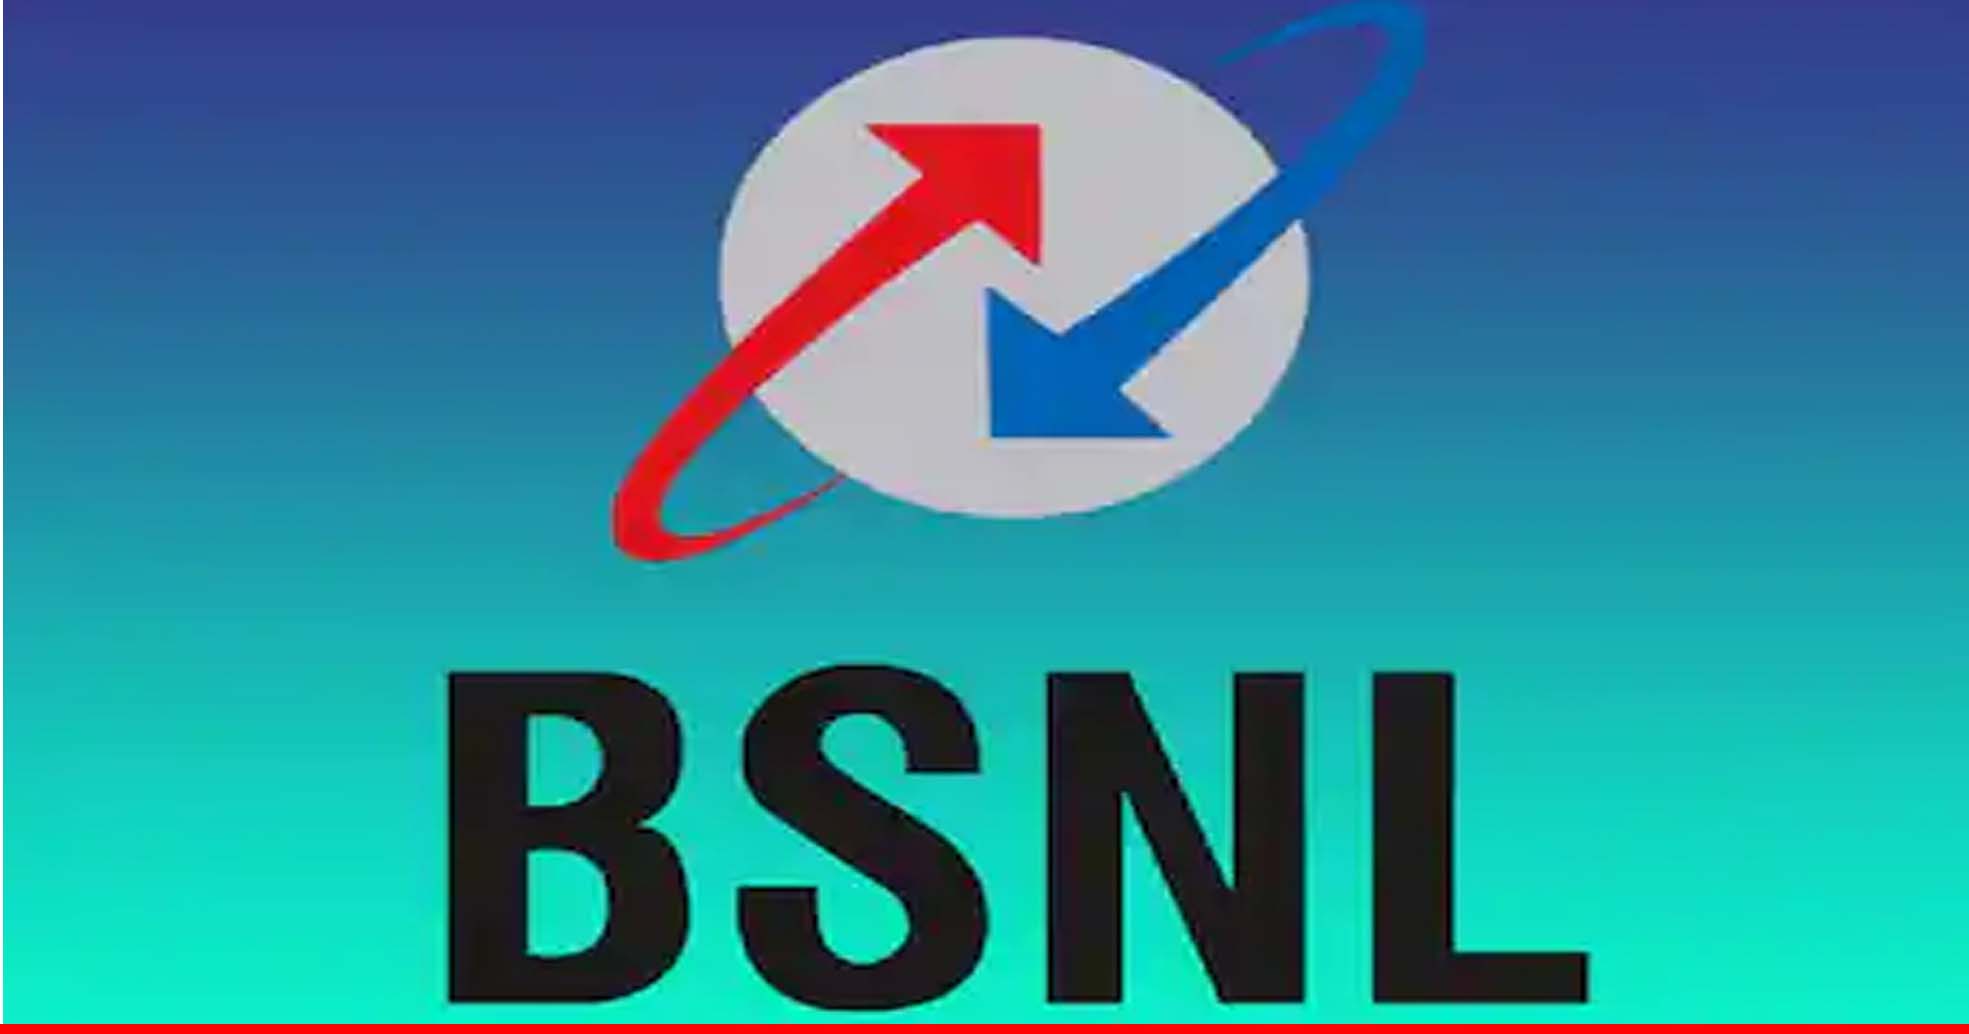 आपने BSNL भारत फाइबर कनेक्शन या डीलरशिप के लिए किया है आवेदन? तो चेक कर लें फैक्ट्स